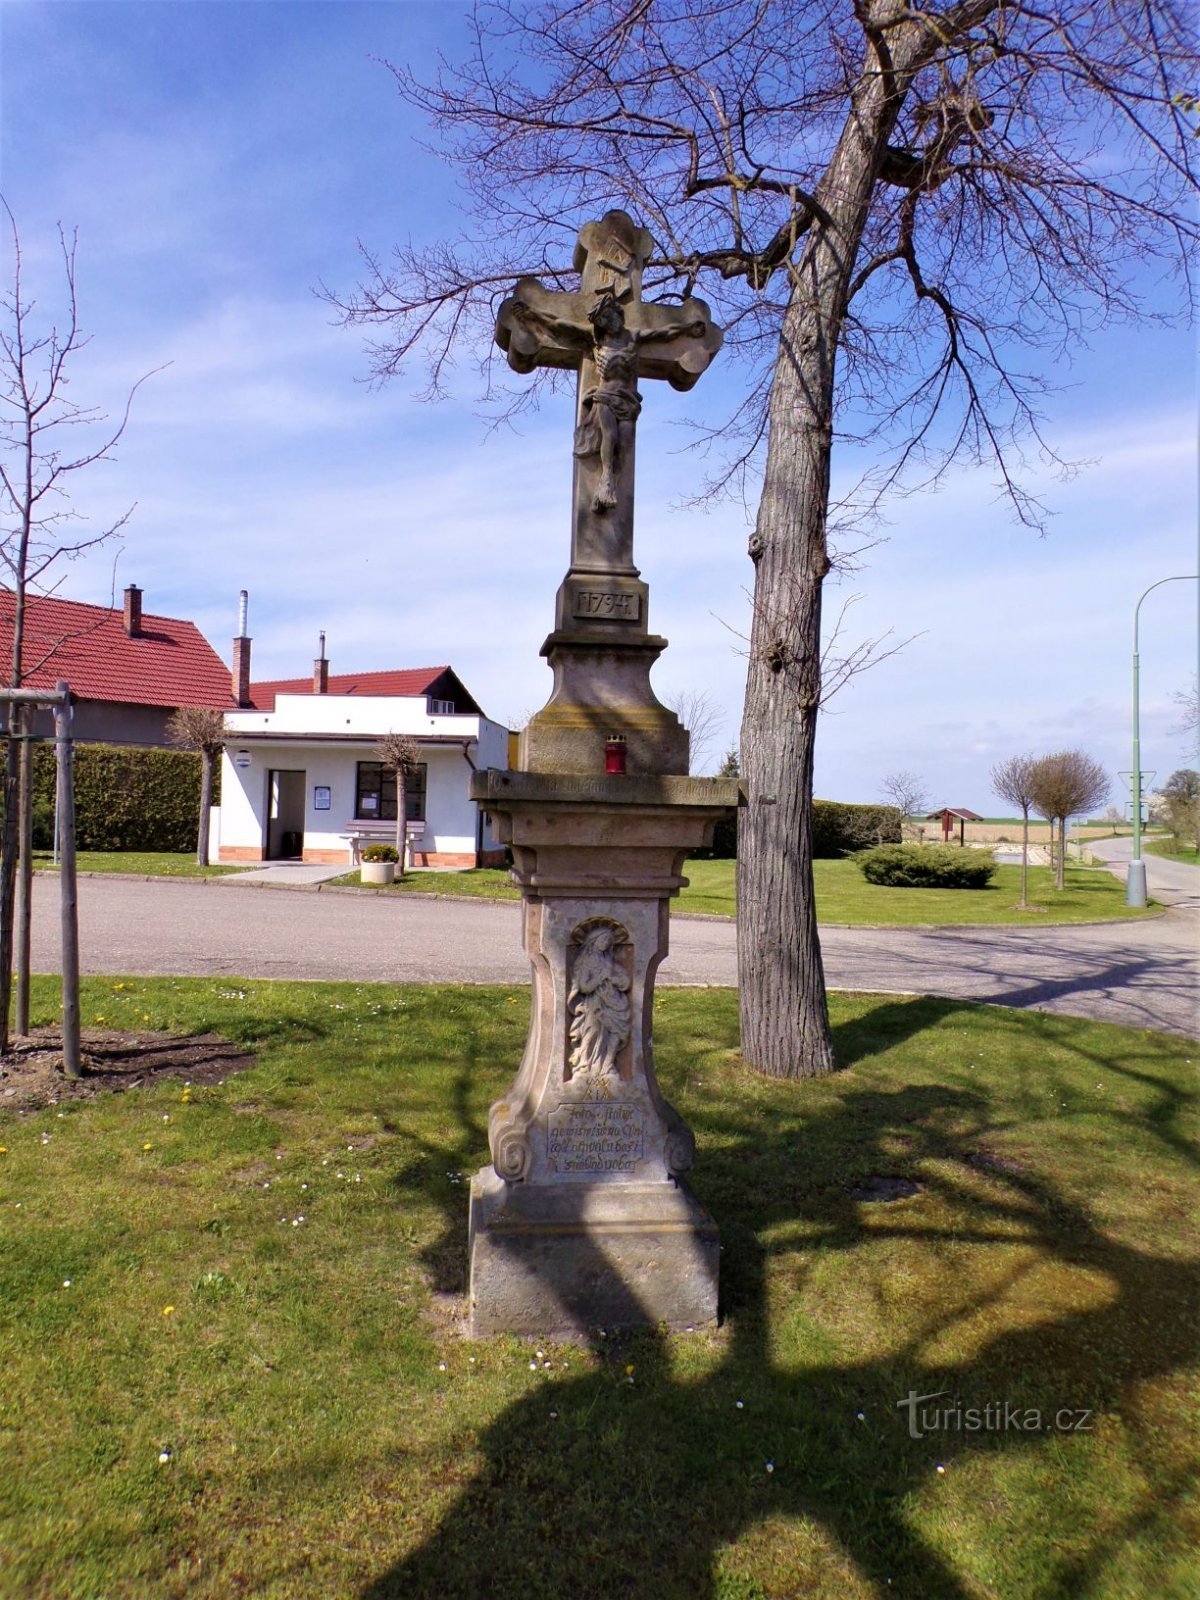 Σταυρός στο σταυροδρόμι (Šaplava, 30.4.2021/XNUMX/XNUMX)